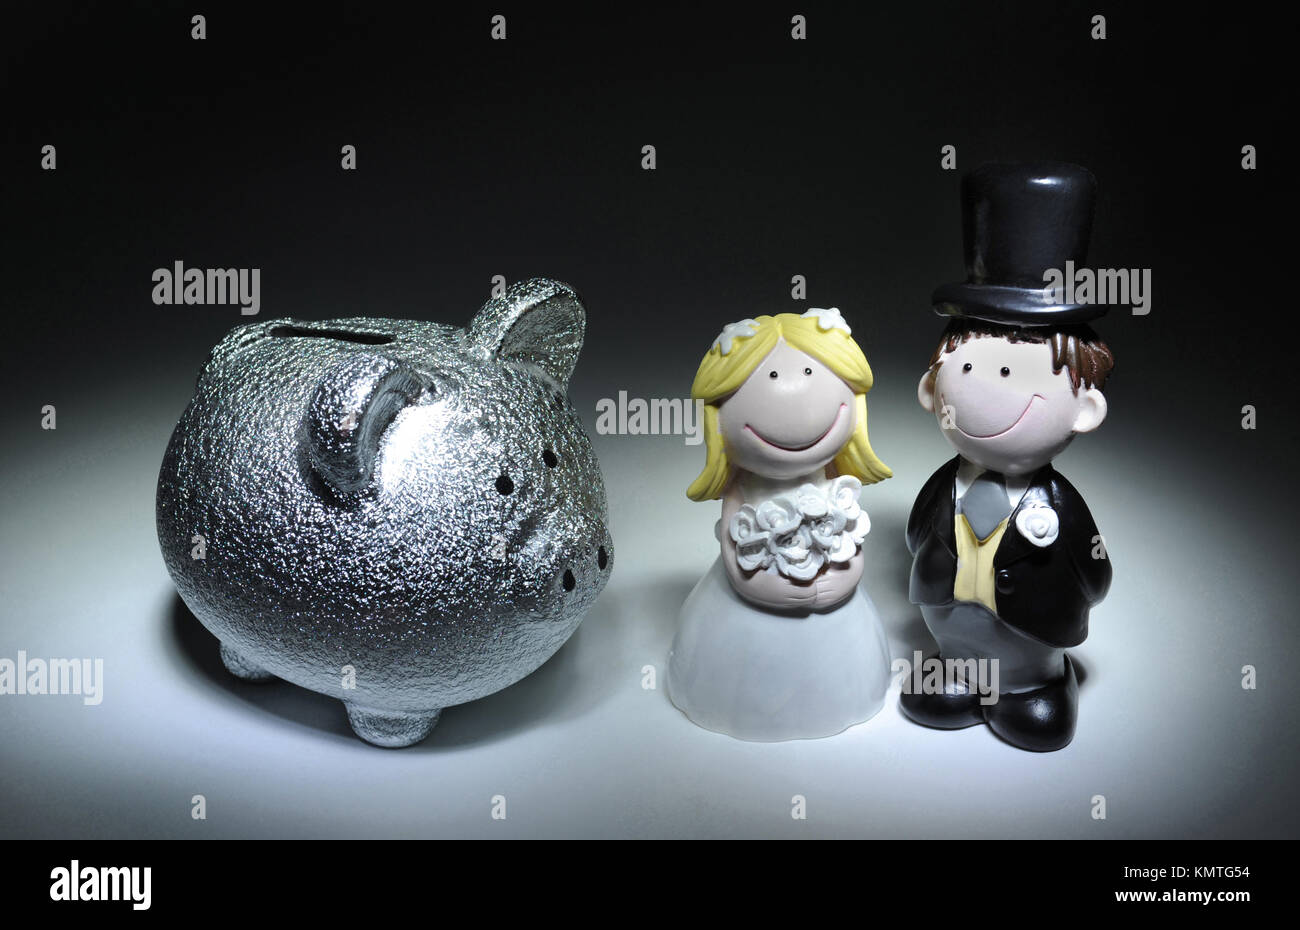 BRIDE AND GROOM FIGURES WITH PIGGYBANK RE WEDDING COSTS MARRIAGE DIVORCE PLANNING SAVING UK Stock Photo